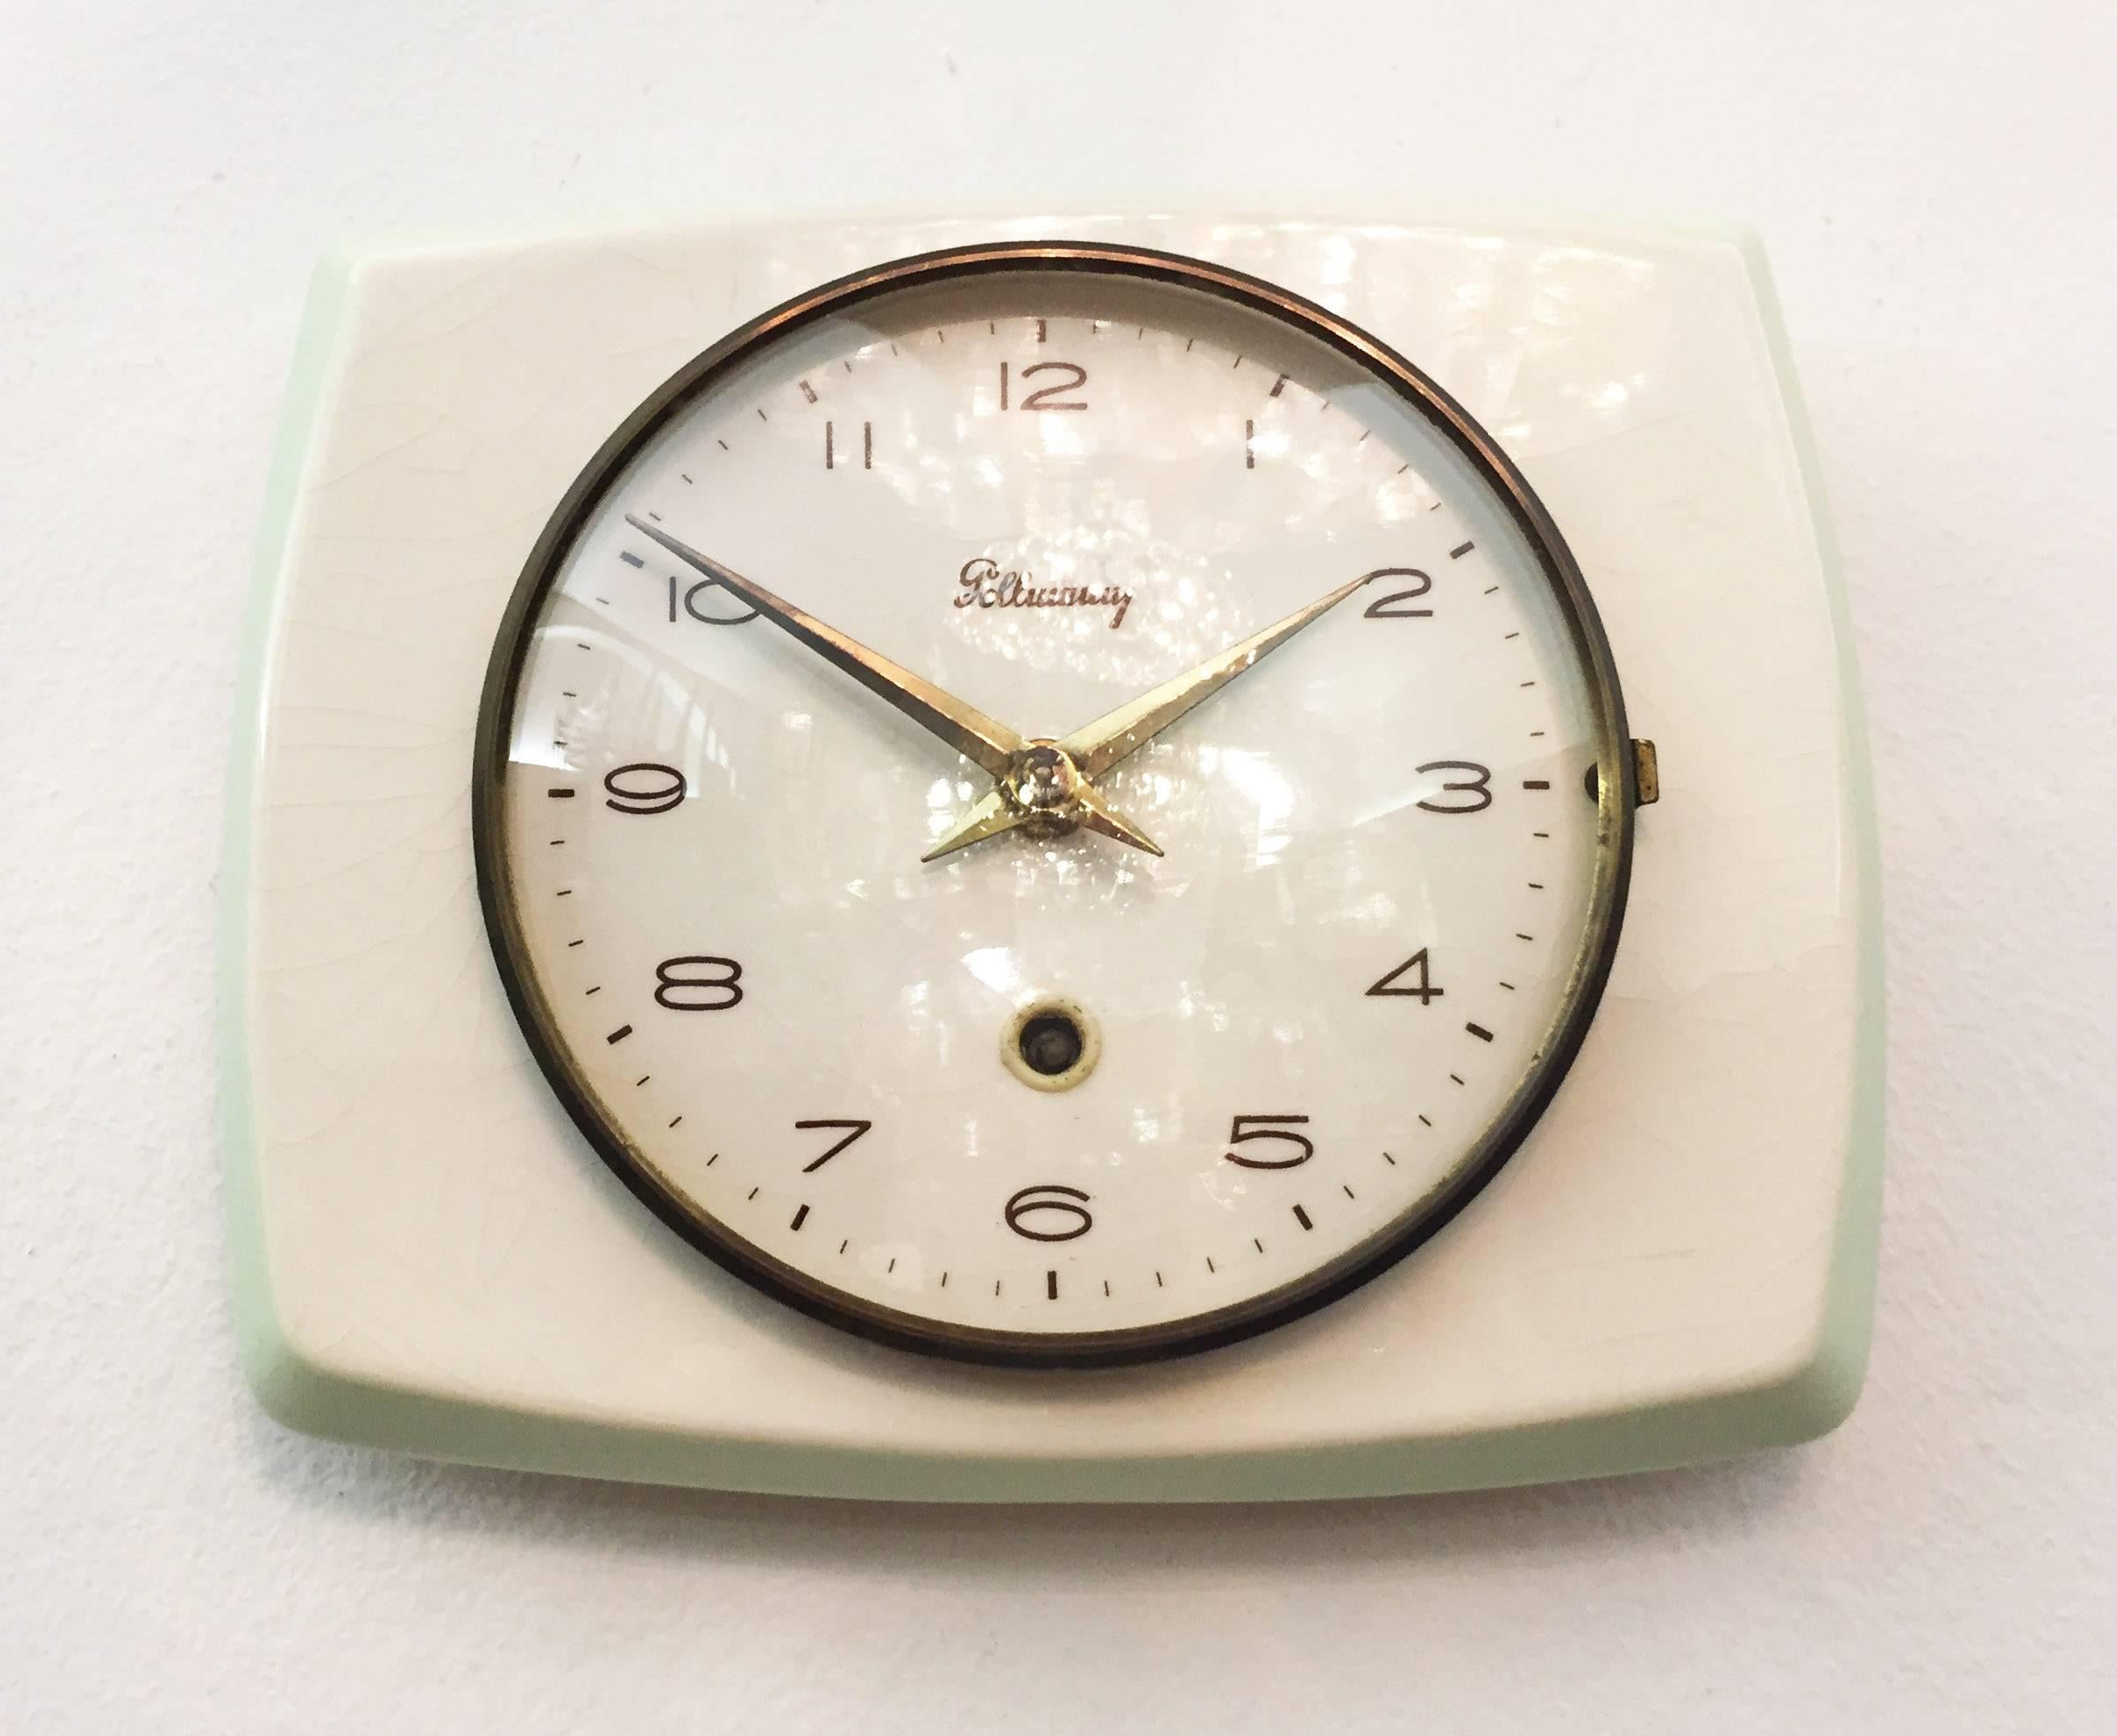 Keramikuhr mit mechanischem Uhrwerk, hergestellt von Pollmann in Österreich in den frühen 1950er Jahren.
Lieferzeit ca. 2-3 Wochen.
Das Uhrwerk wird vor dem Versand von einem Uhrmacher überprüft. Auf Wunsch kann es auch gegen ein Batterieuhrwerk